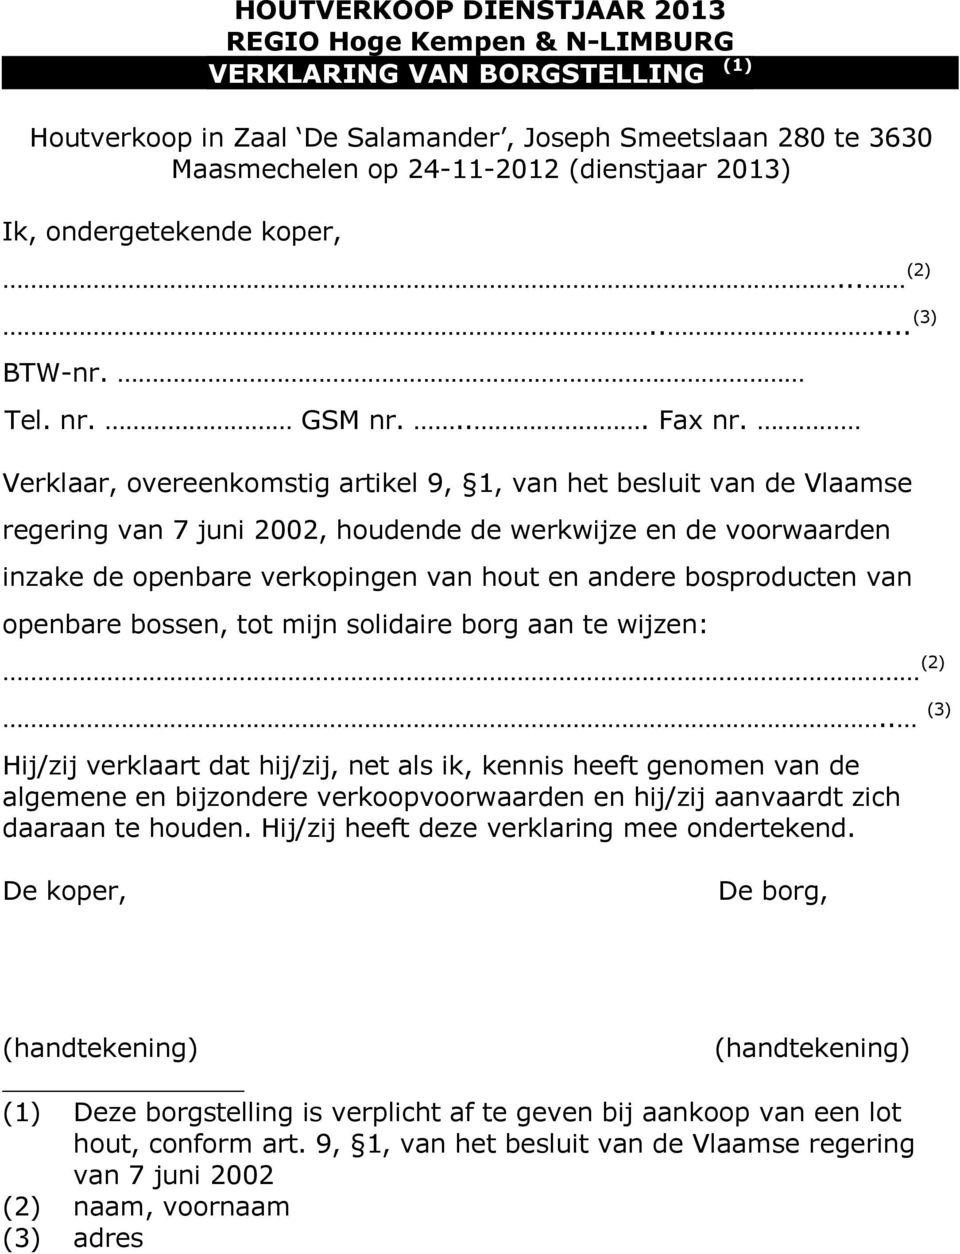 Verklaar, overeenkomstig artikel 9, 1, van het besluit van de Vlaamse regering van 7 juni 2002, houdende de werkwijze en de voorwaarden inzake de openbare verkopingen van hout en andere bosproducten